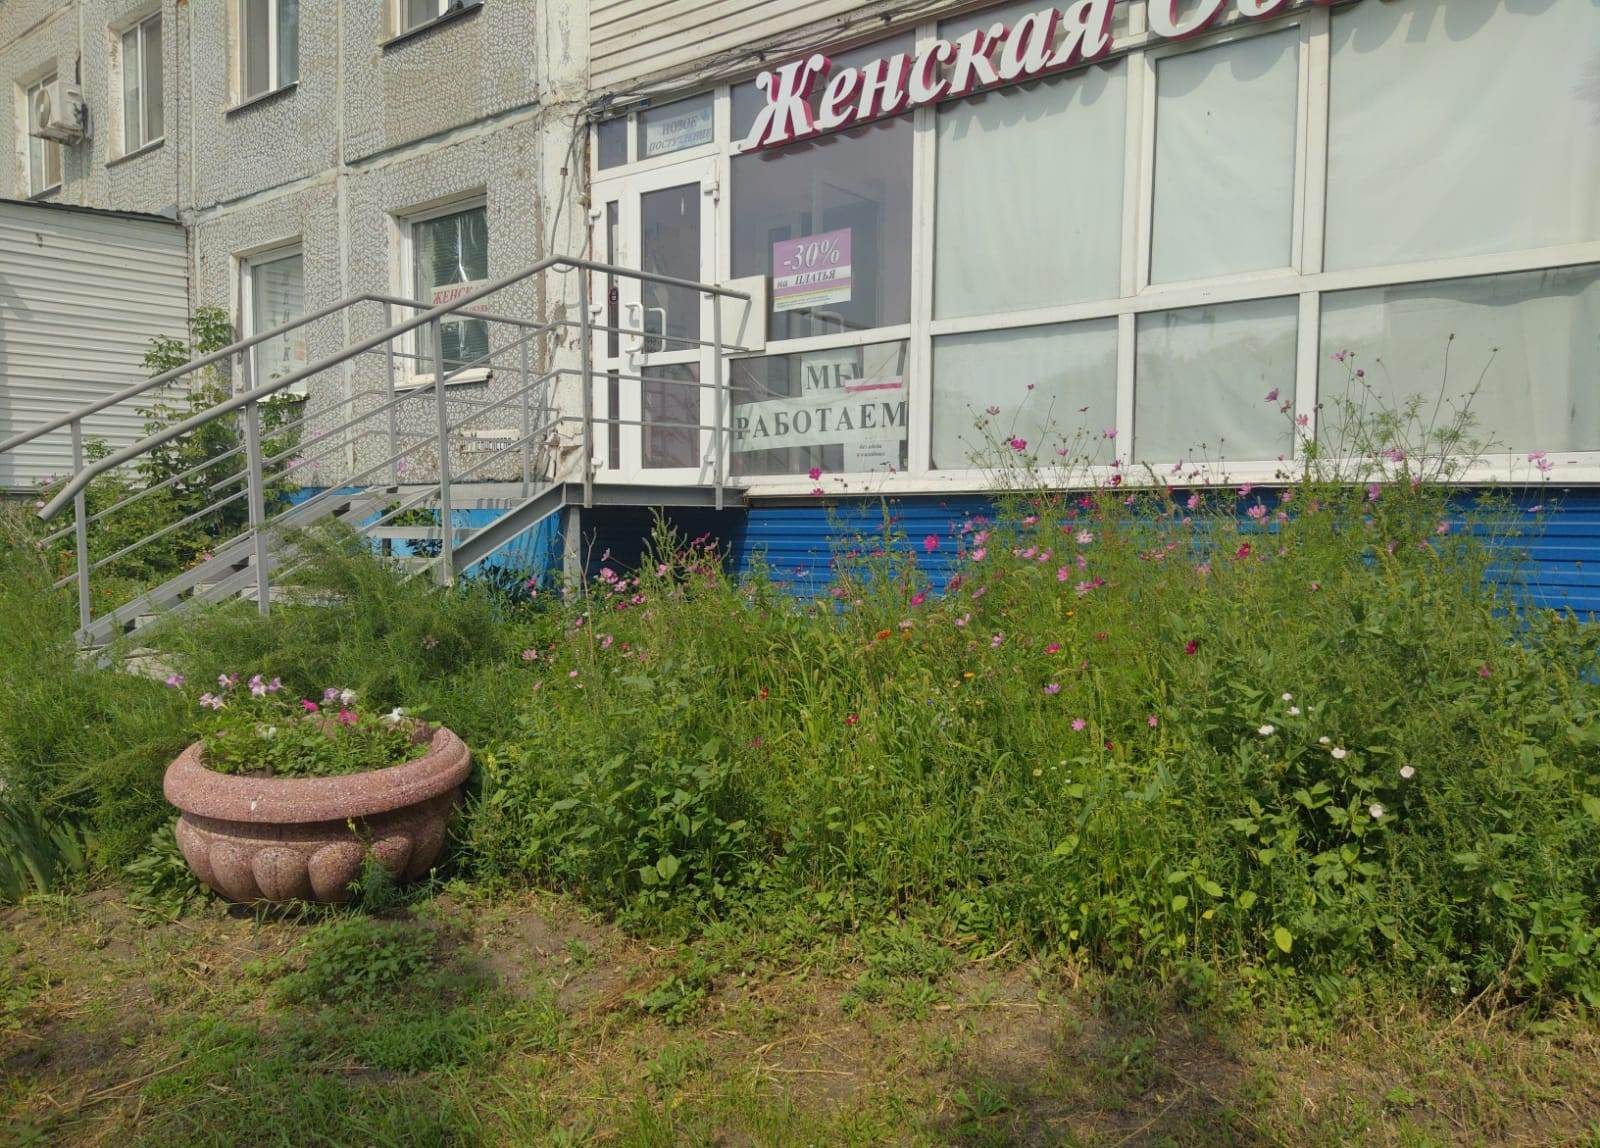 Жильцы омской многоэтажки пожаловались на незаконное крыльцо в доме #Омск #Общество #Сегодня